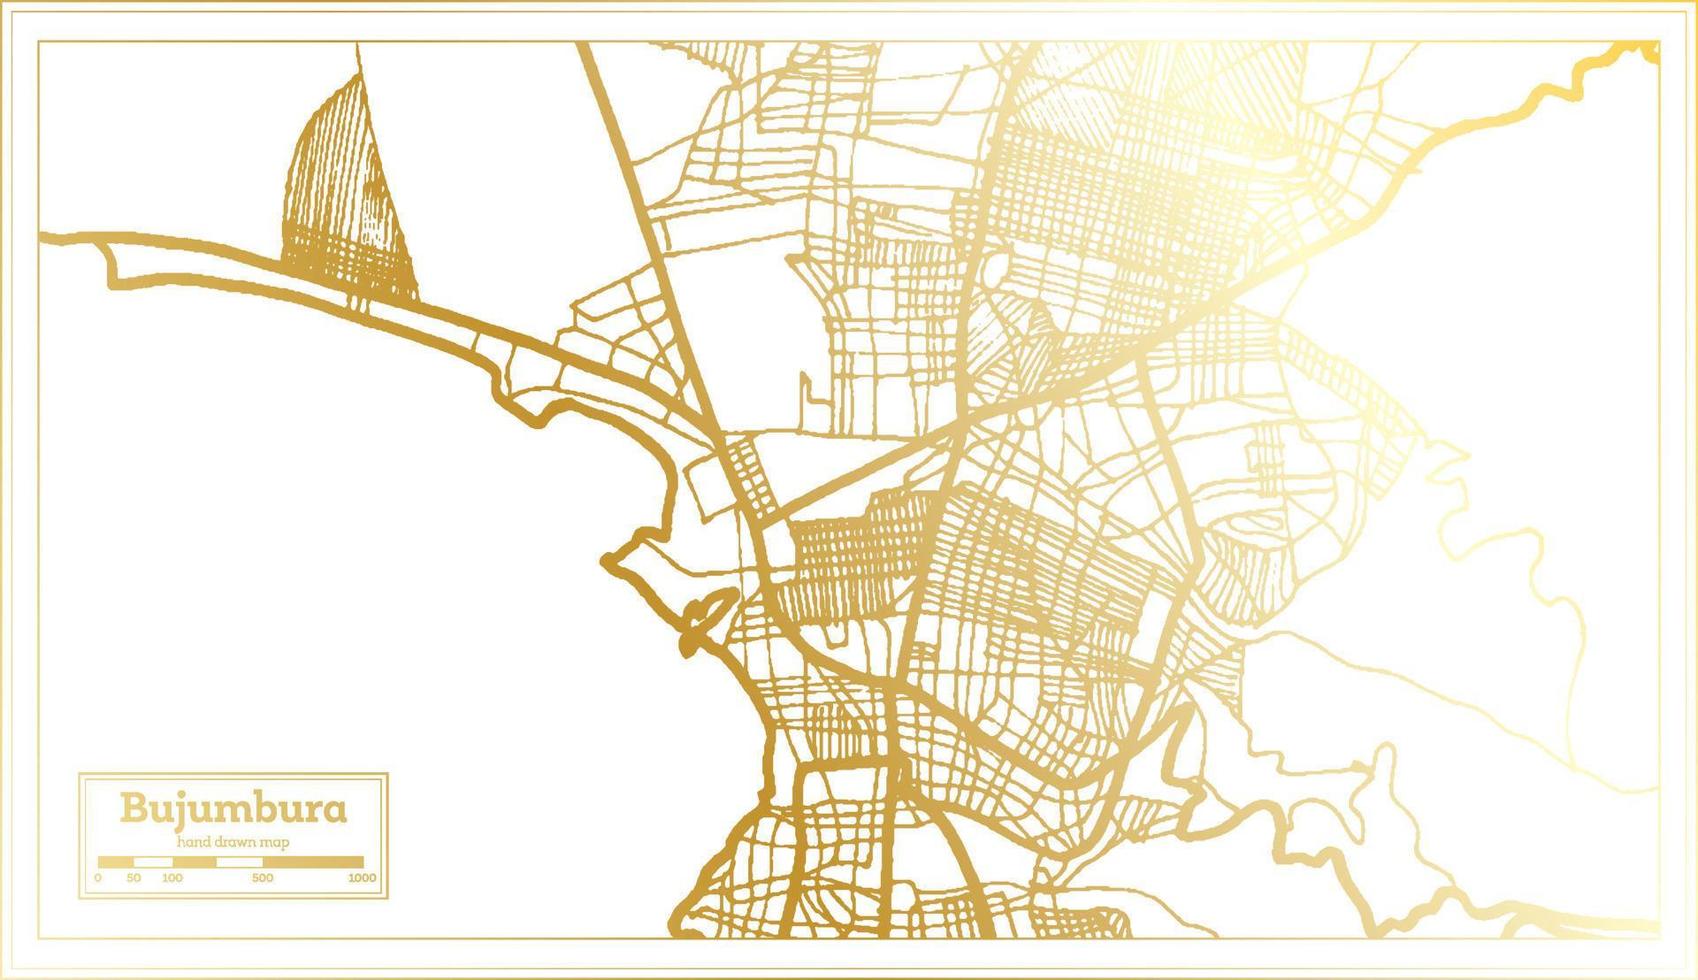 bujumbura burundi stadtplan im retro-stil in goldener farbe. Übersichtskarte. vektor